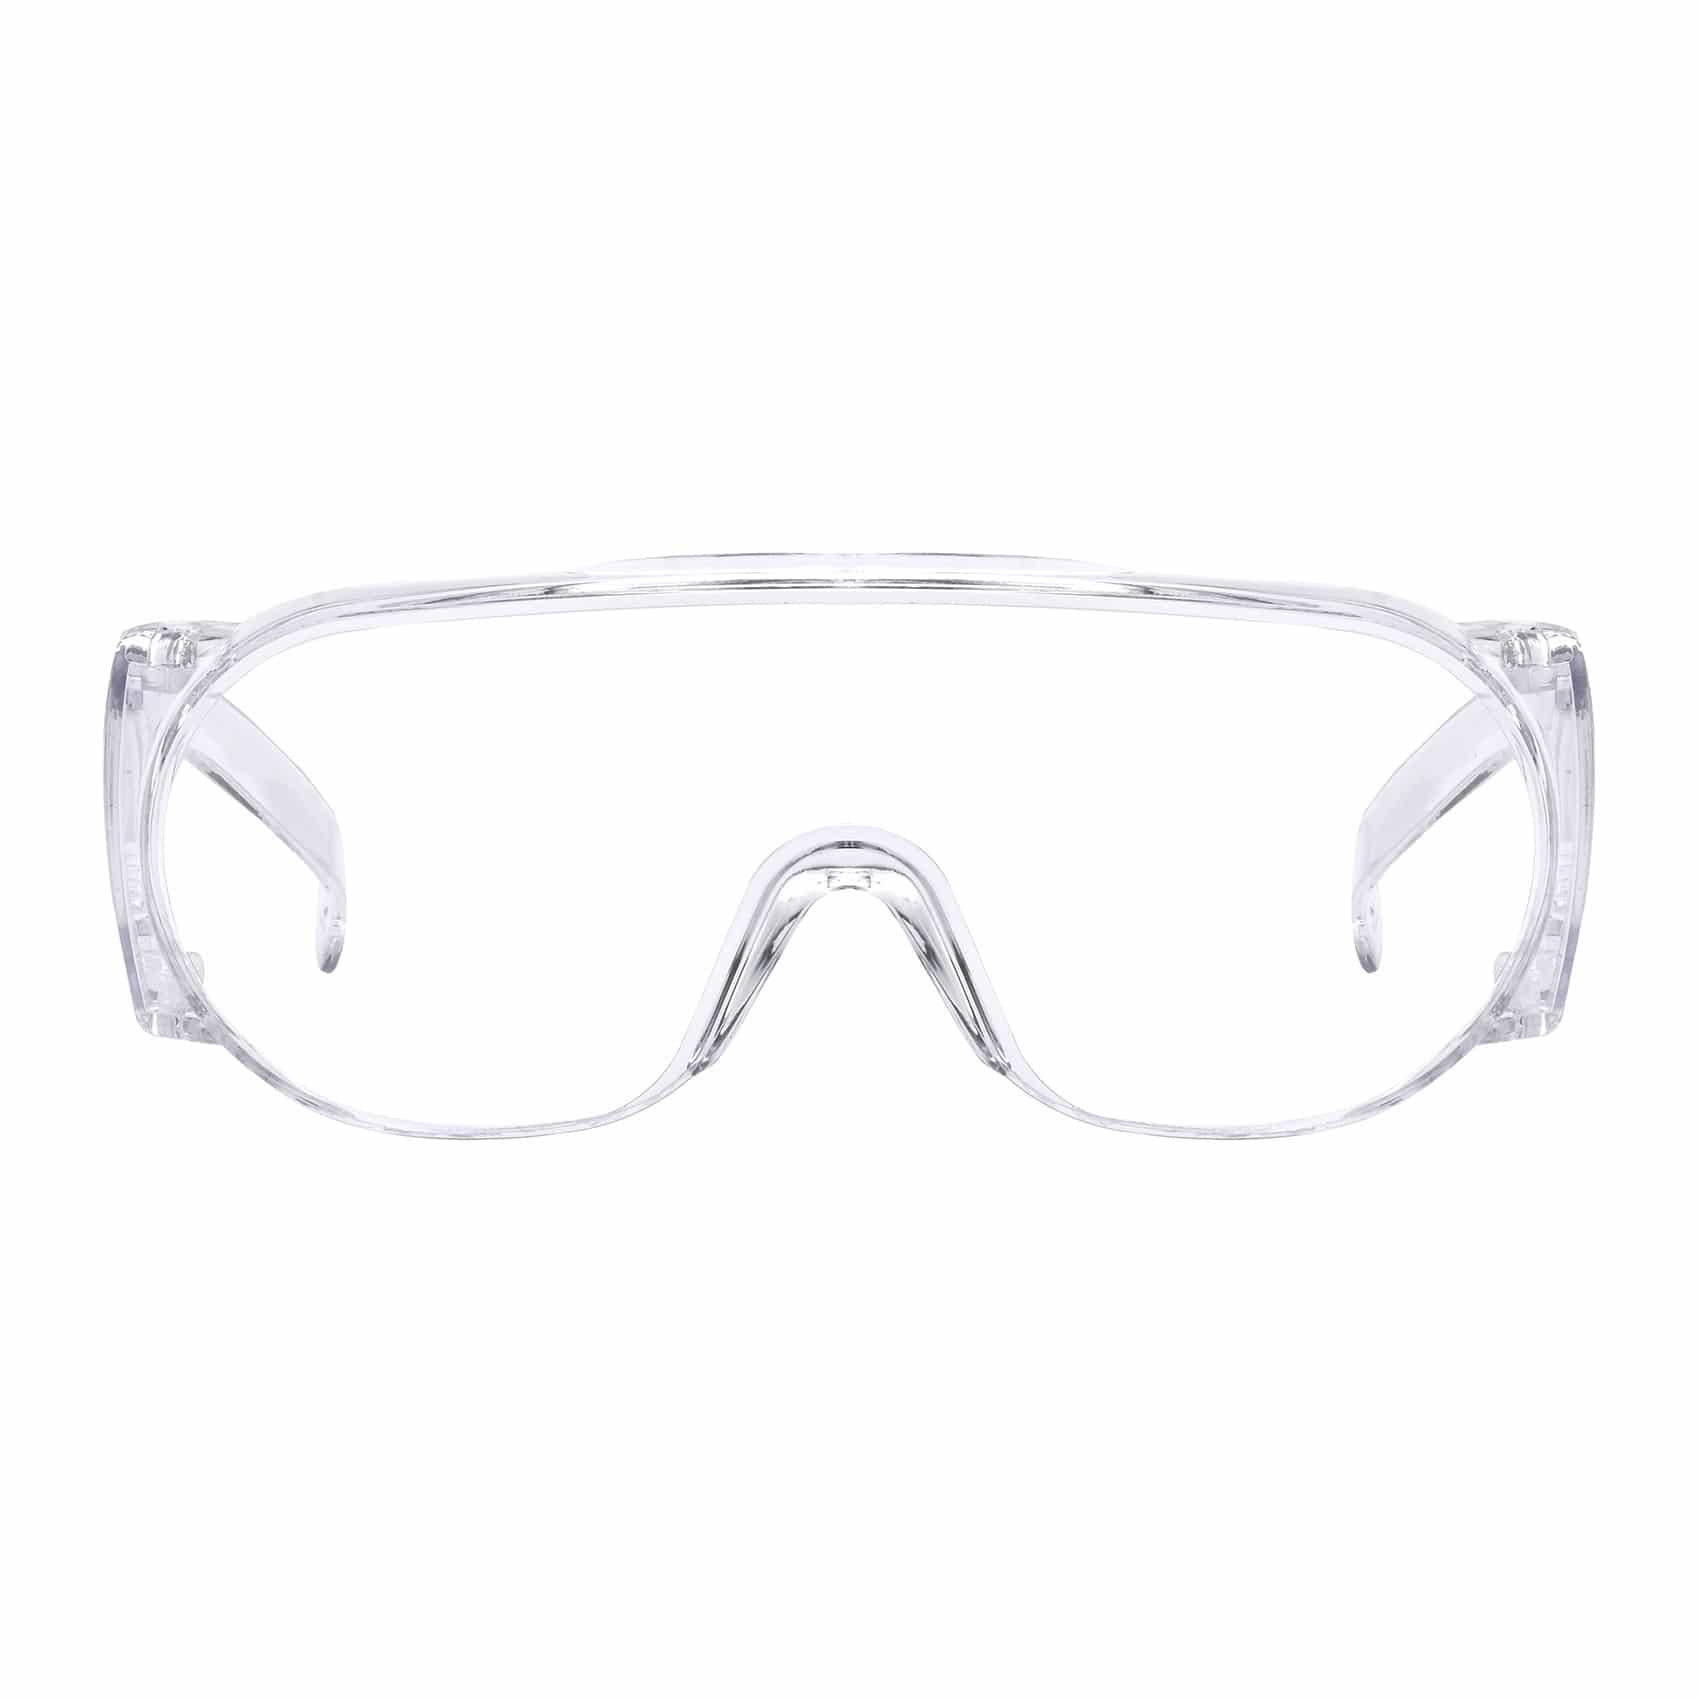 The Lima Protective Glasses - PMedi.com